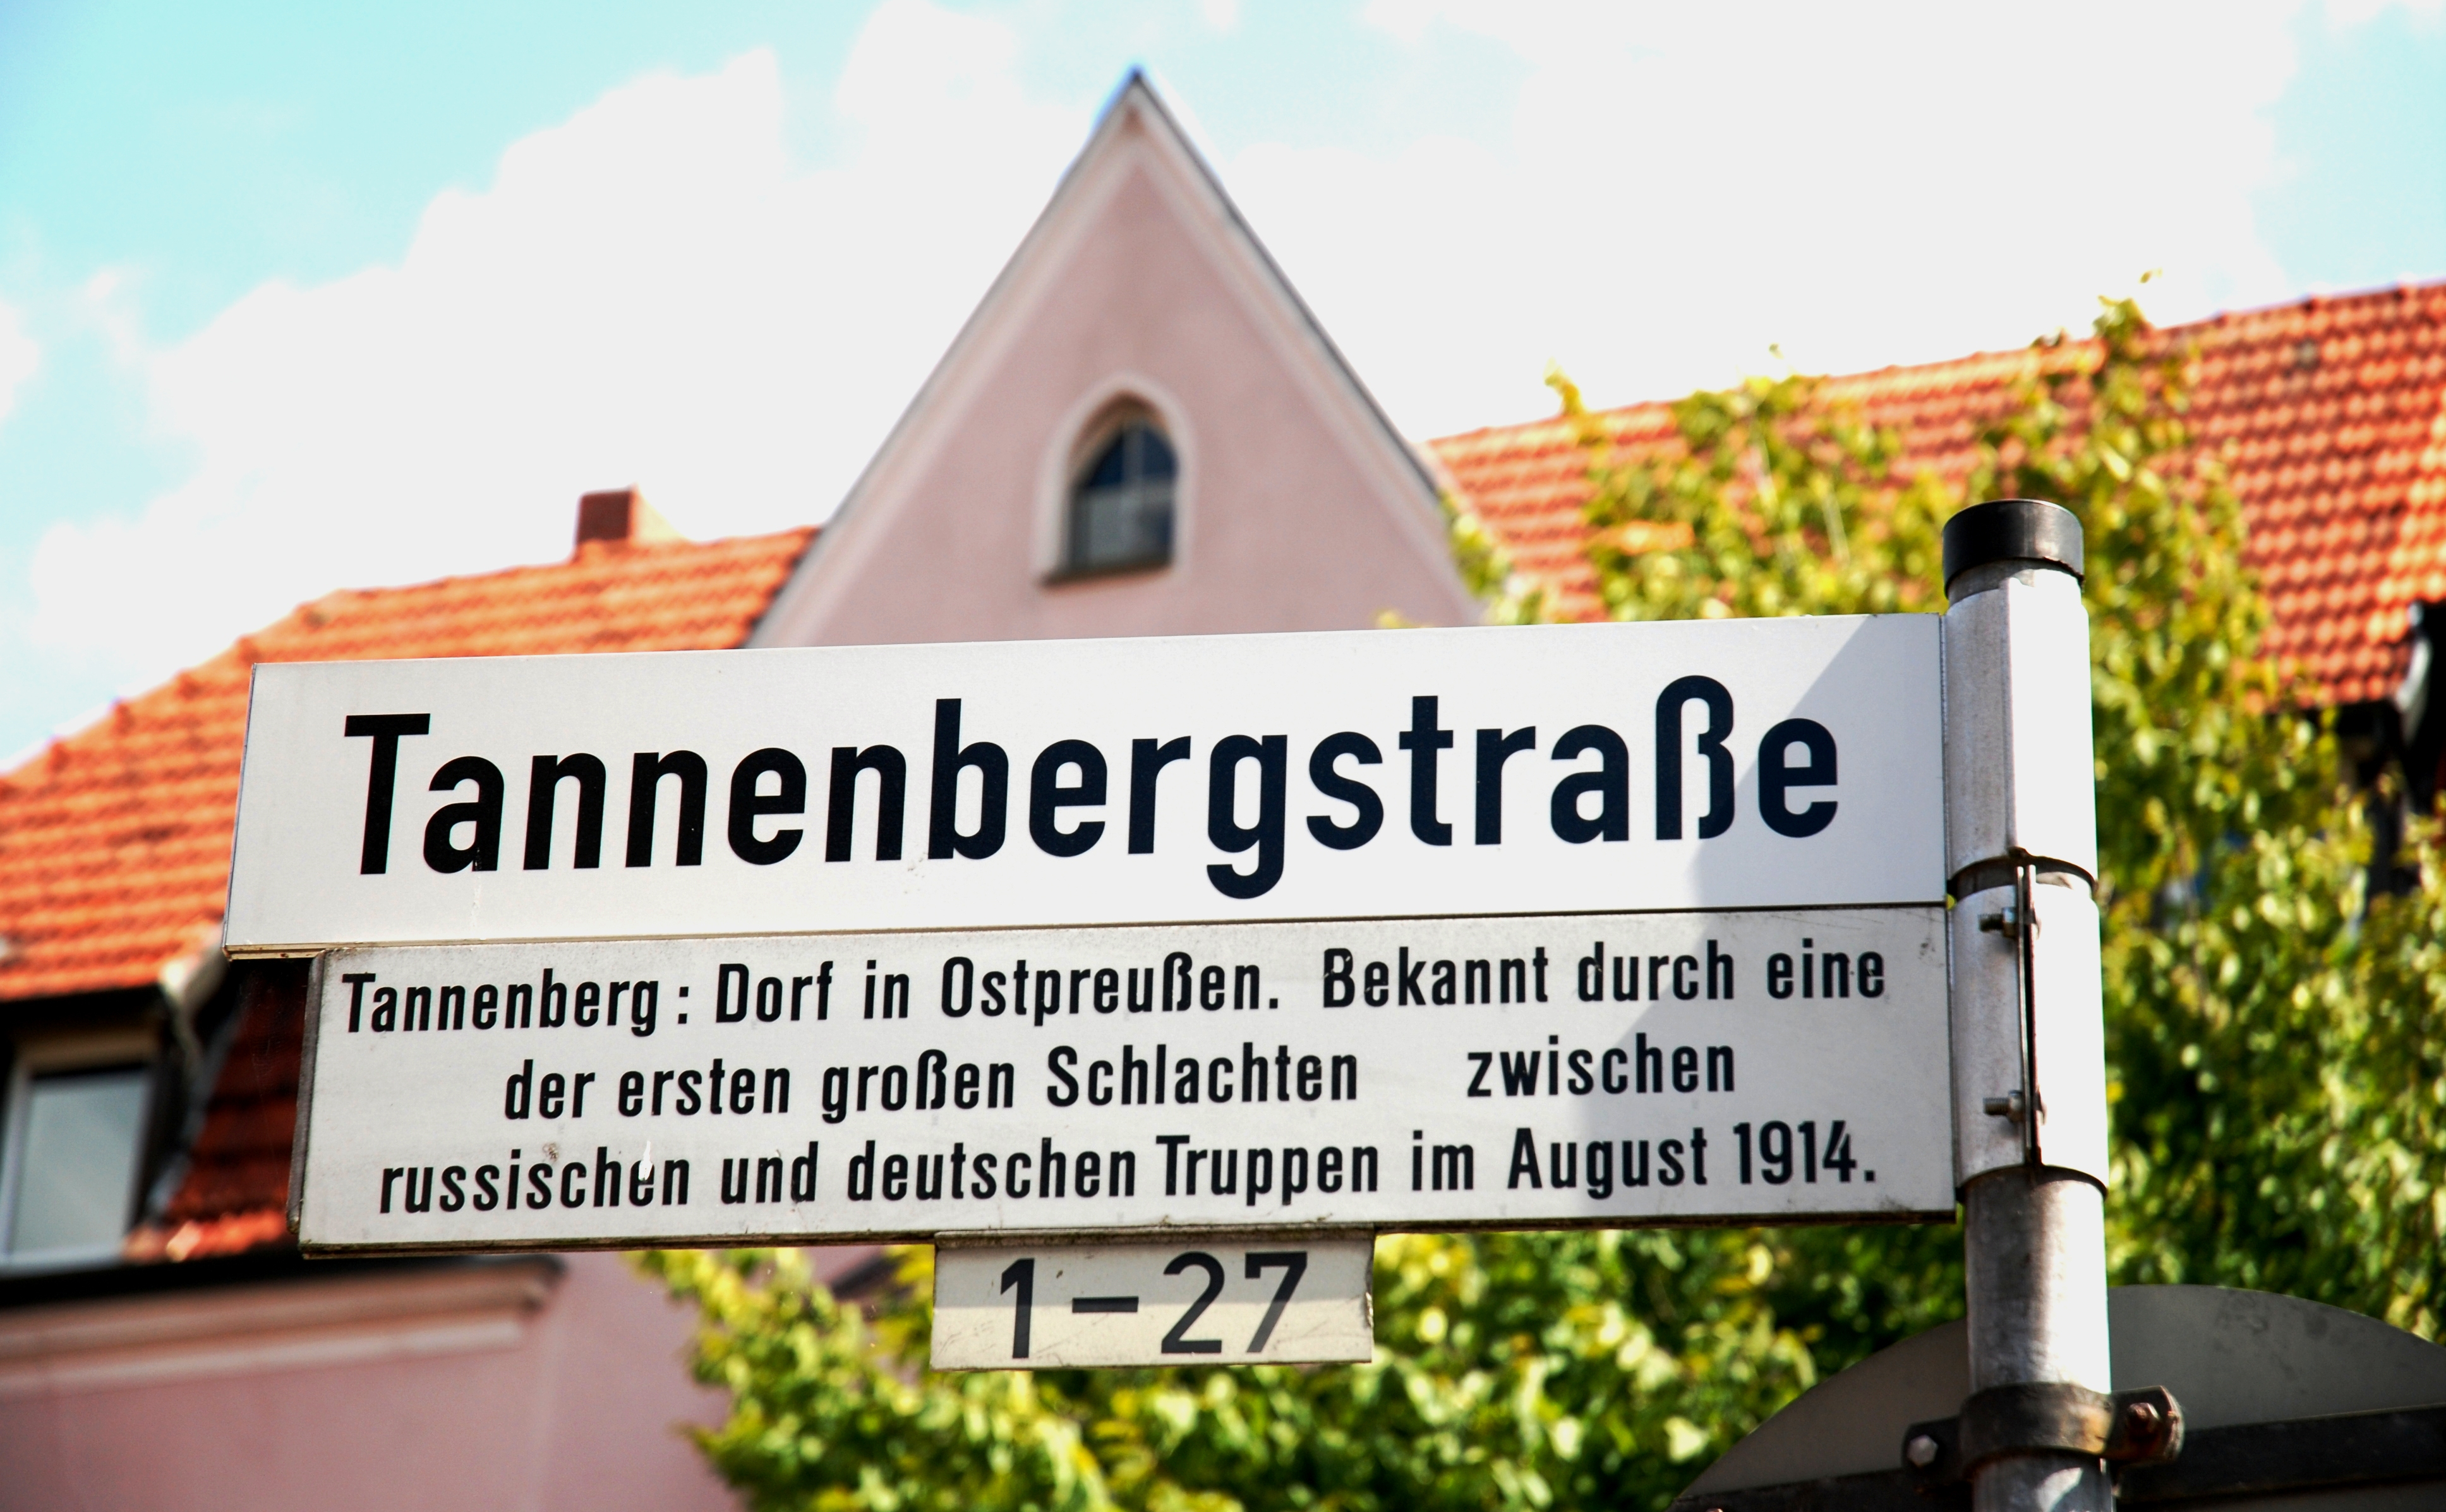 Beispiel für einen umstrittenen Straßennamen: Straßenschild von der Tannenbergstraße